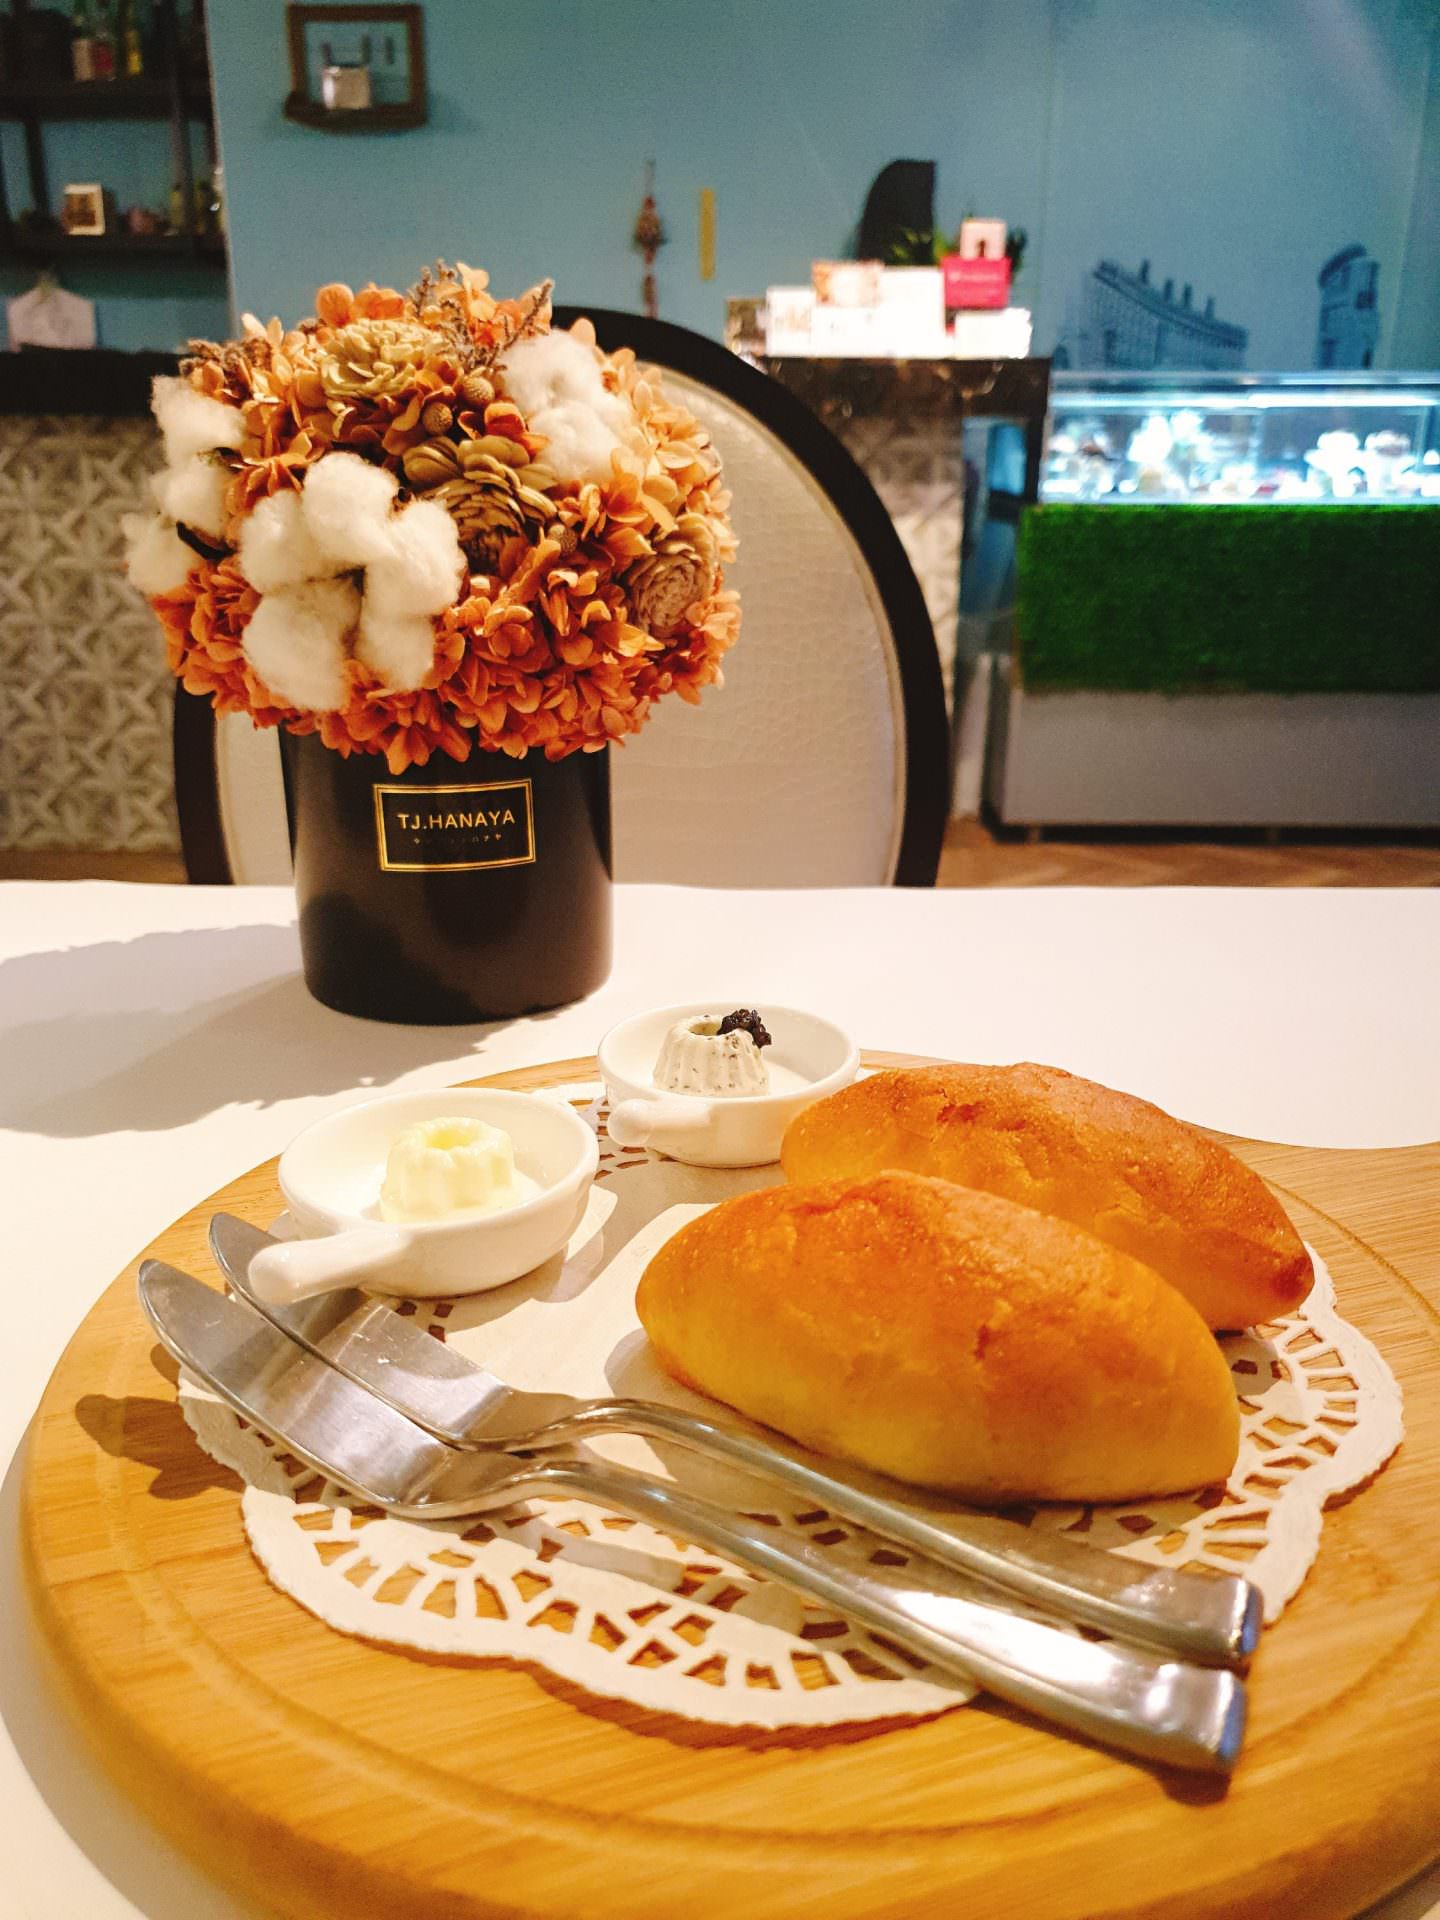 【食記】台北中山【春日甜 Bistro Café】夢幻甜點餐酒咖啡廳 | 捷運中山站美食、甜點蛋糕下午茶、小酌